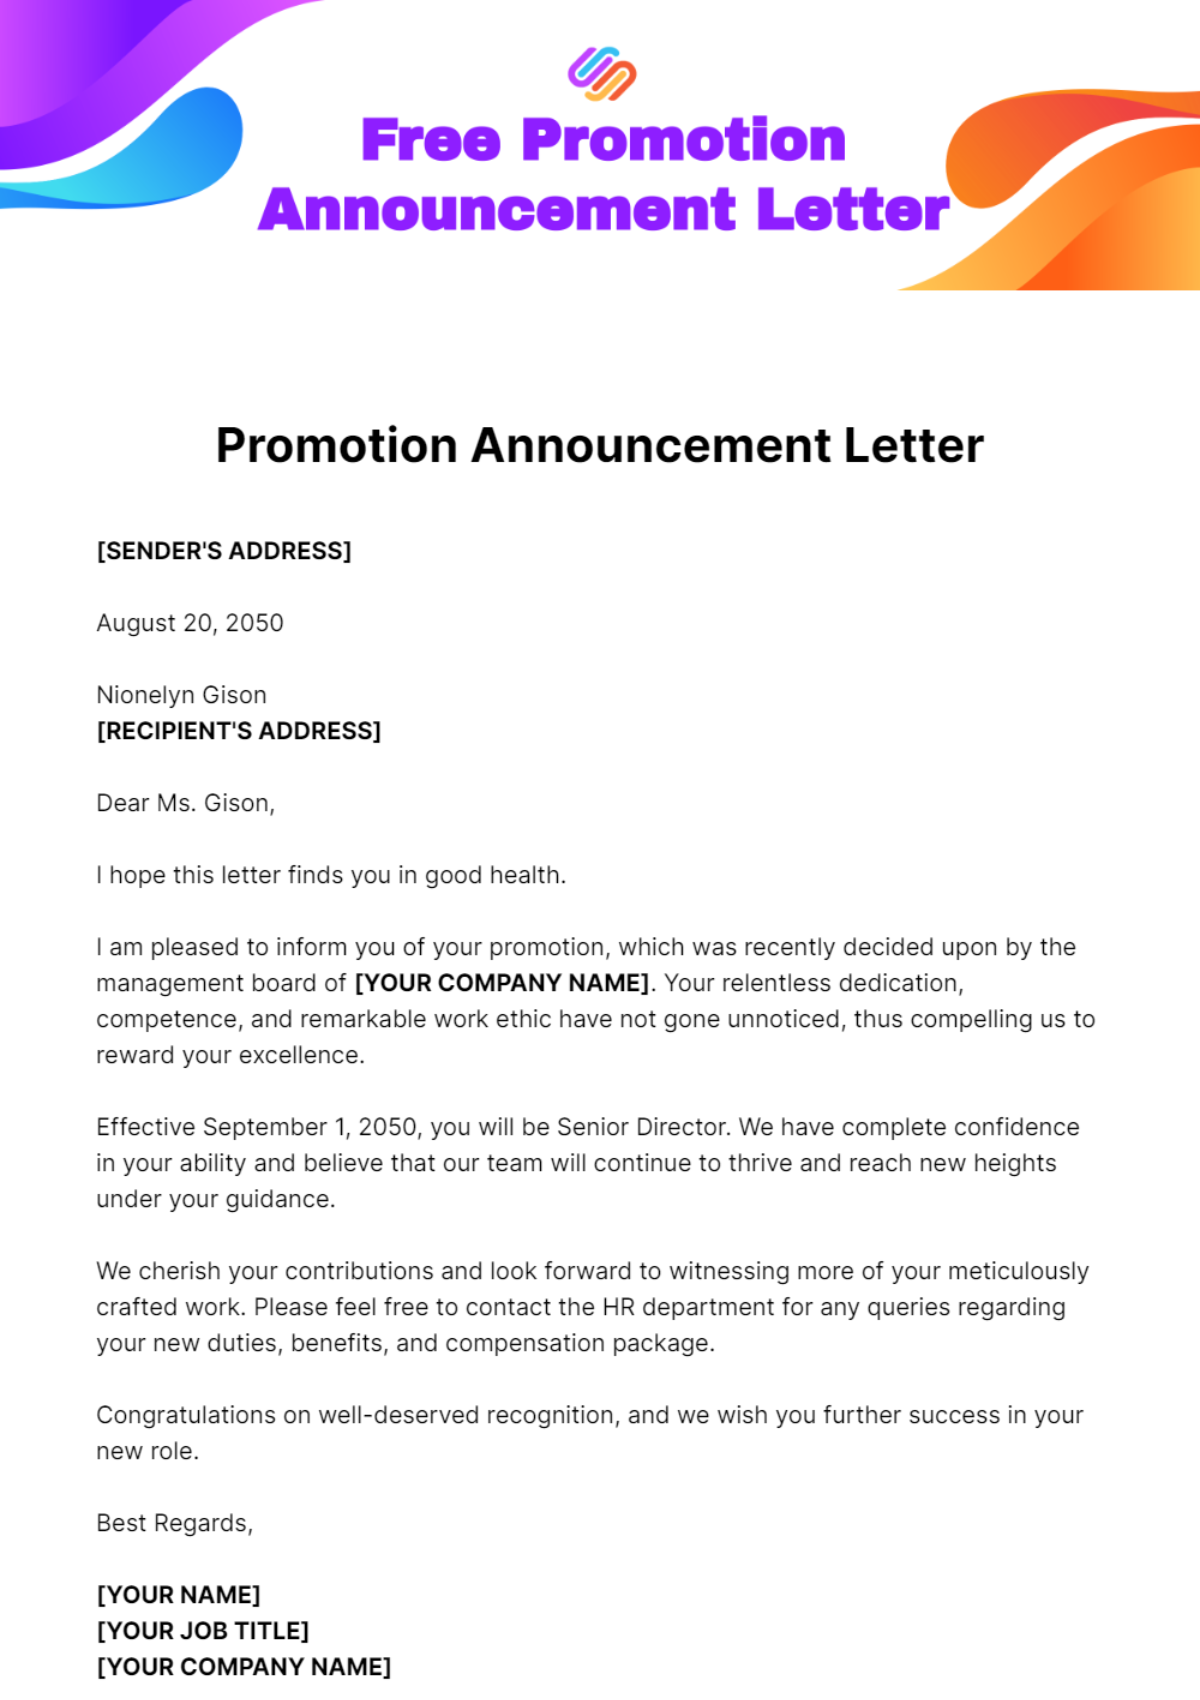 Promotion Announcement Letter Template